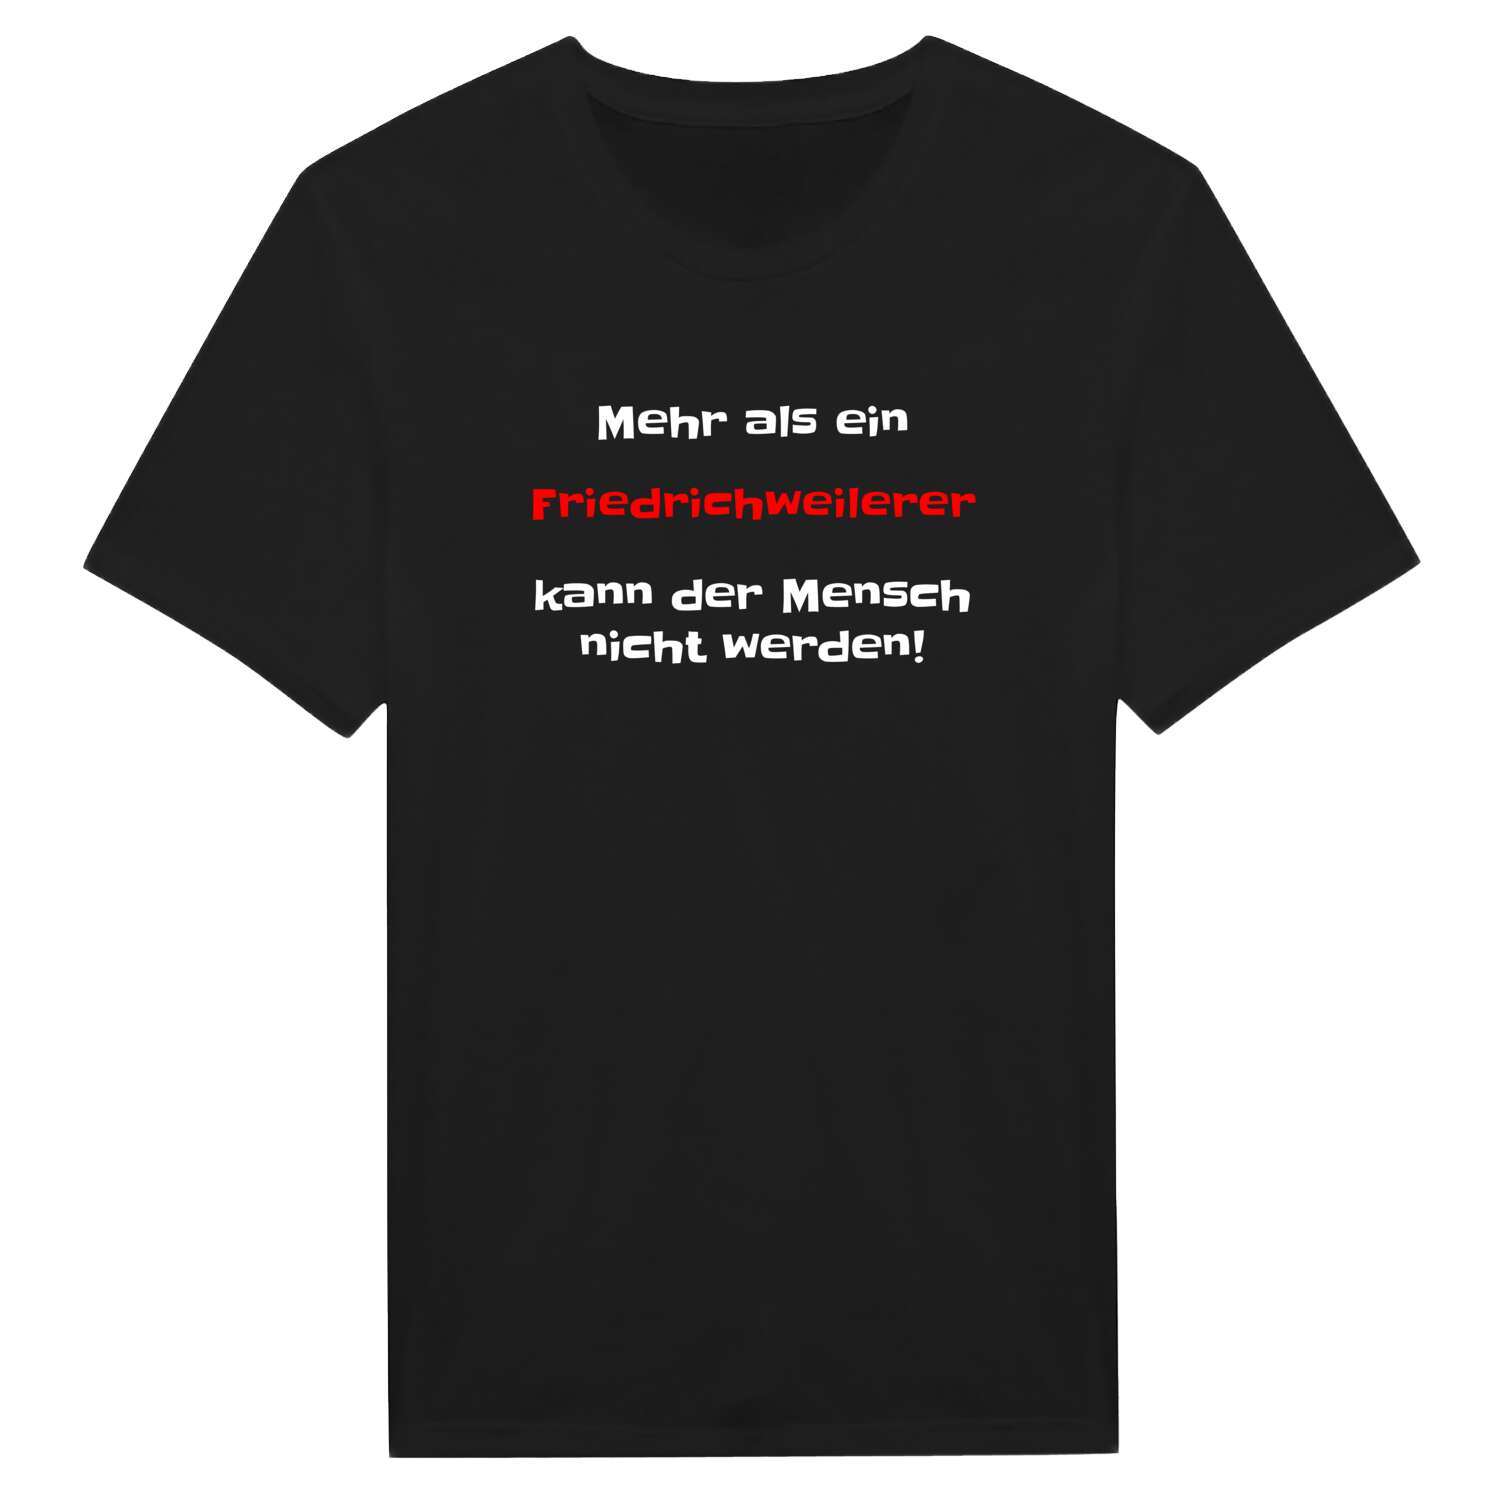 Friedrichweiler T-Shirt »Mehr als ein«